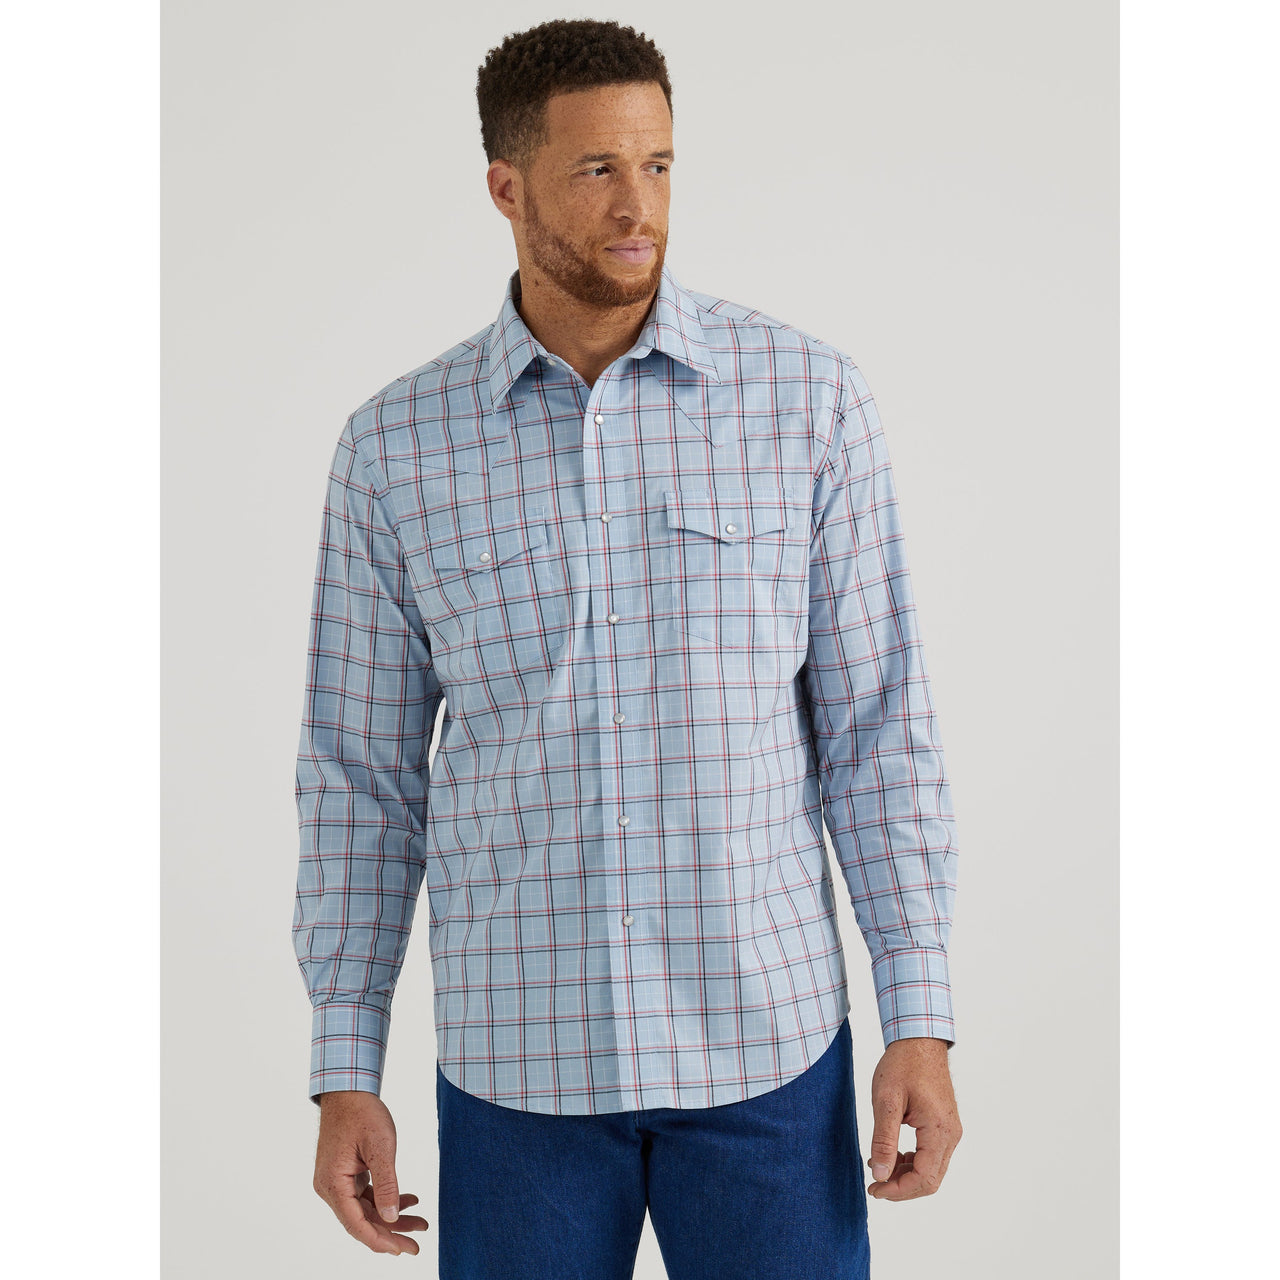 Wrangler Men's Wrinkle Resist Long Sleeve Plaid Shirt - Blue